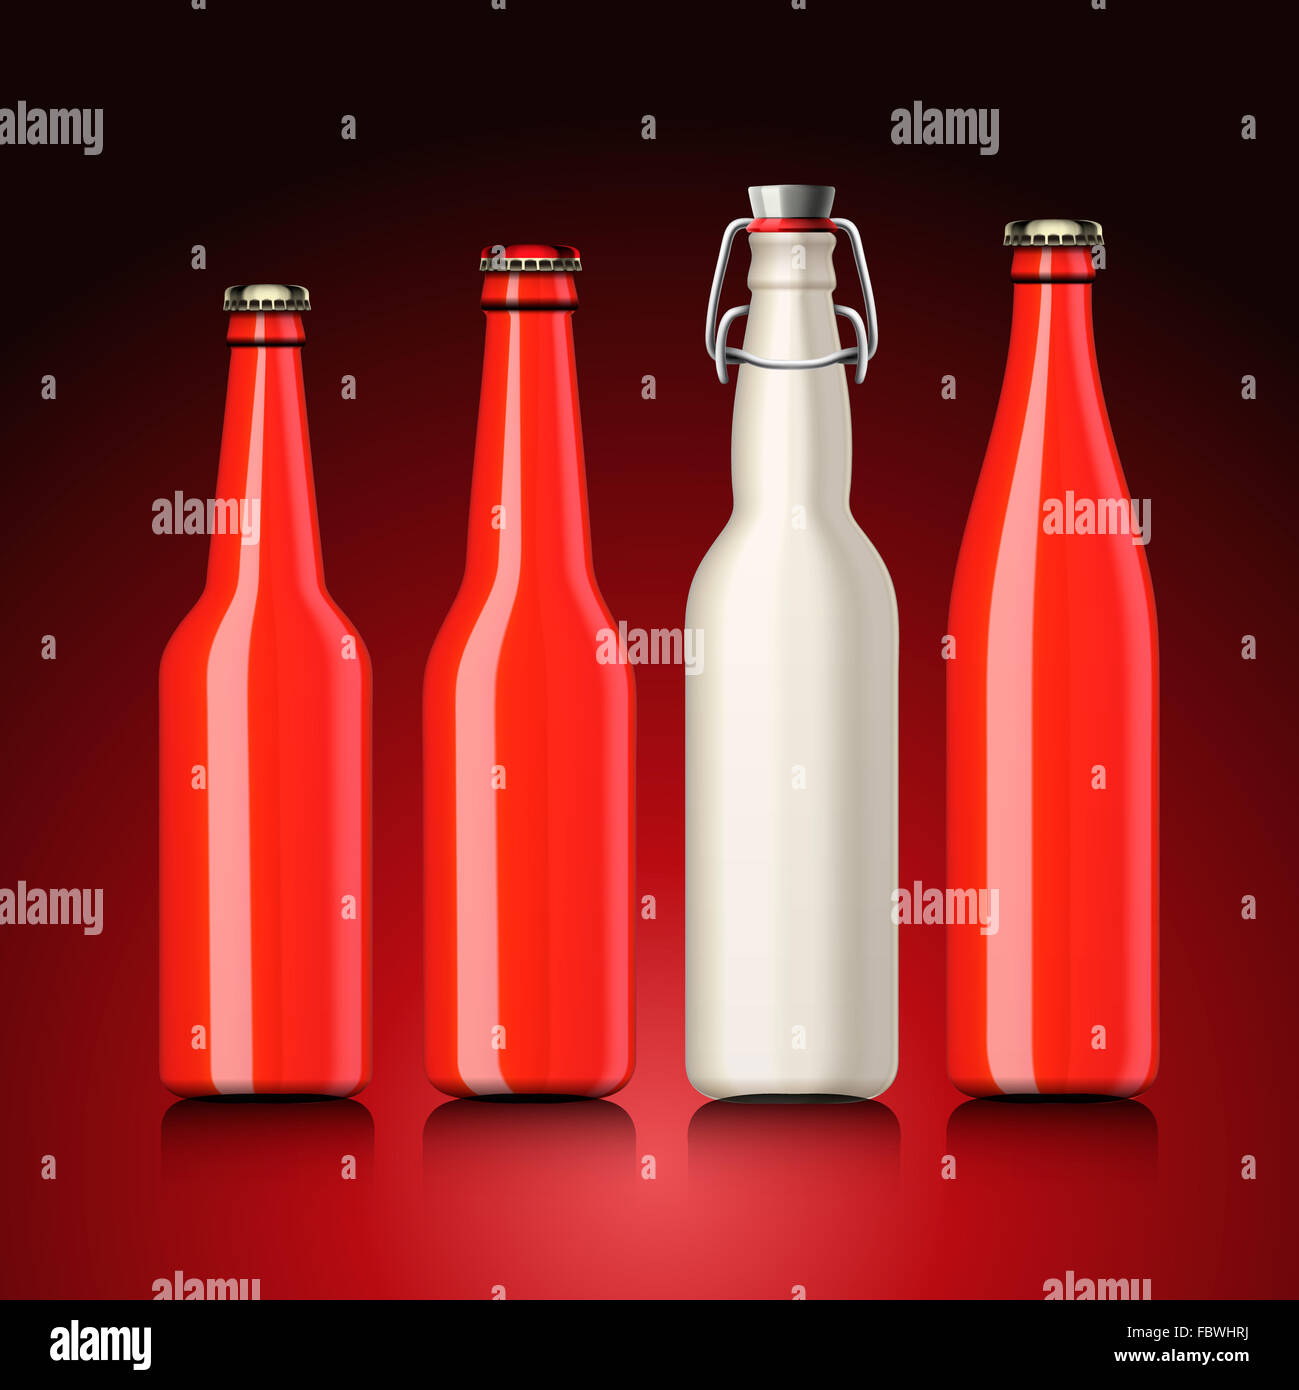 Bierflasche mit kein Label gesetzt Stockfoto